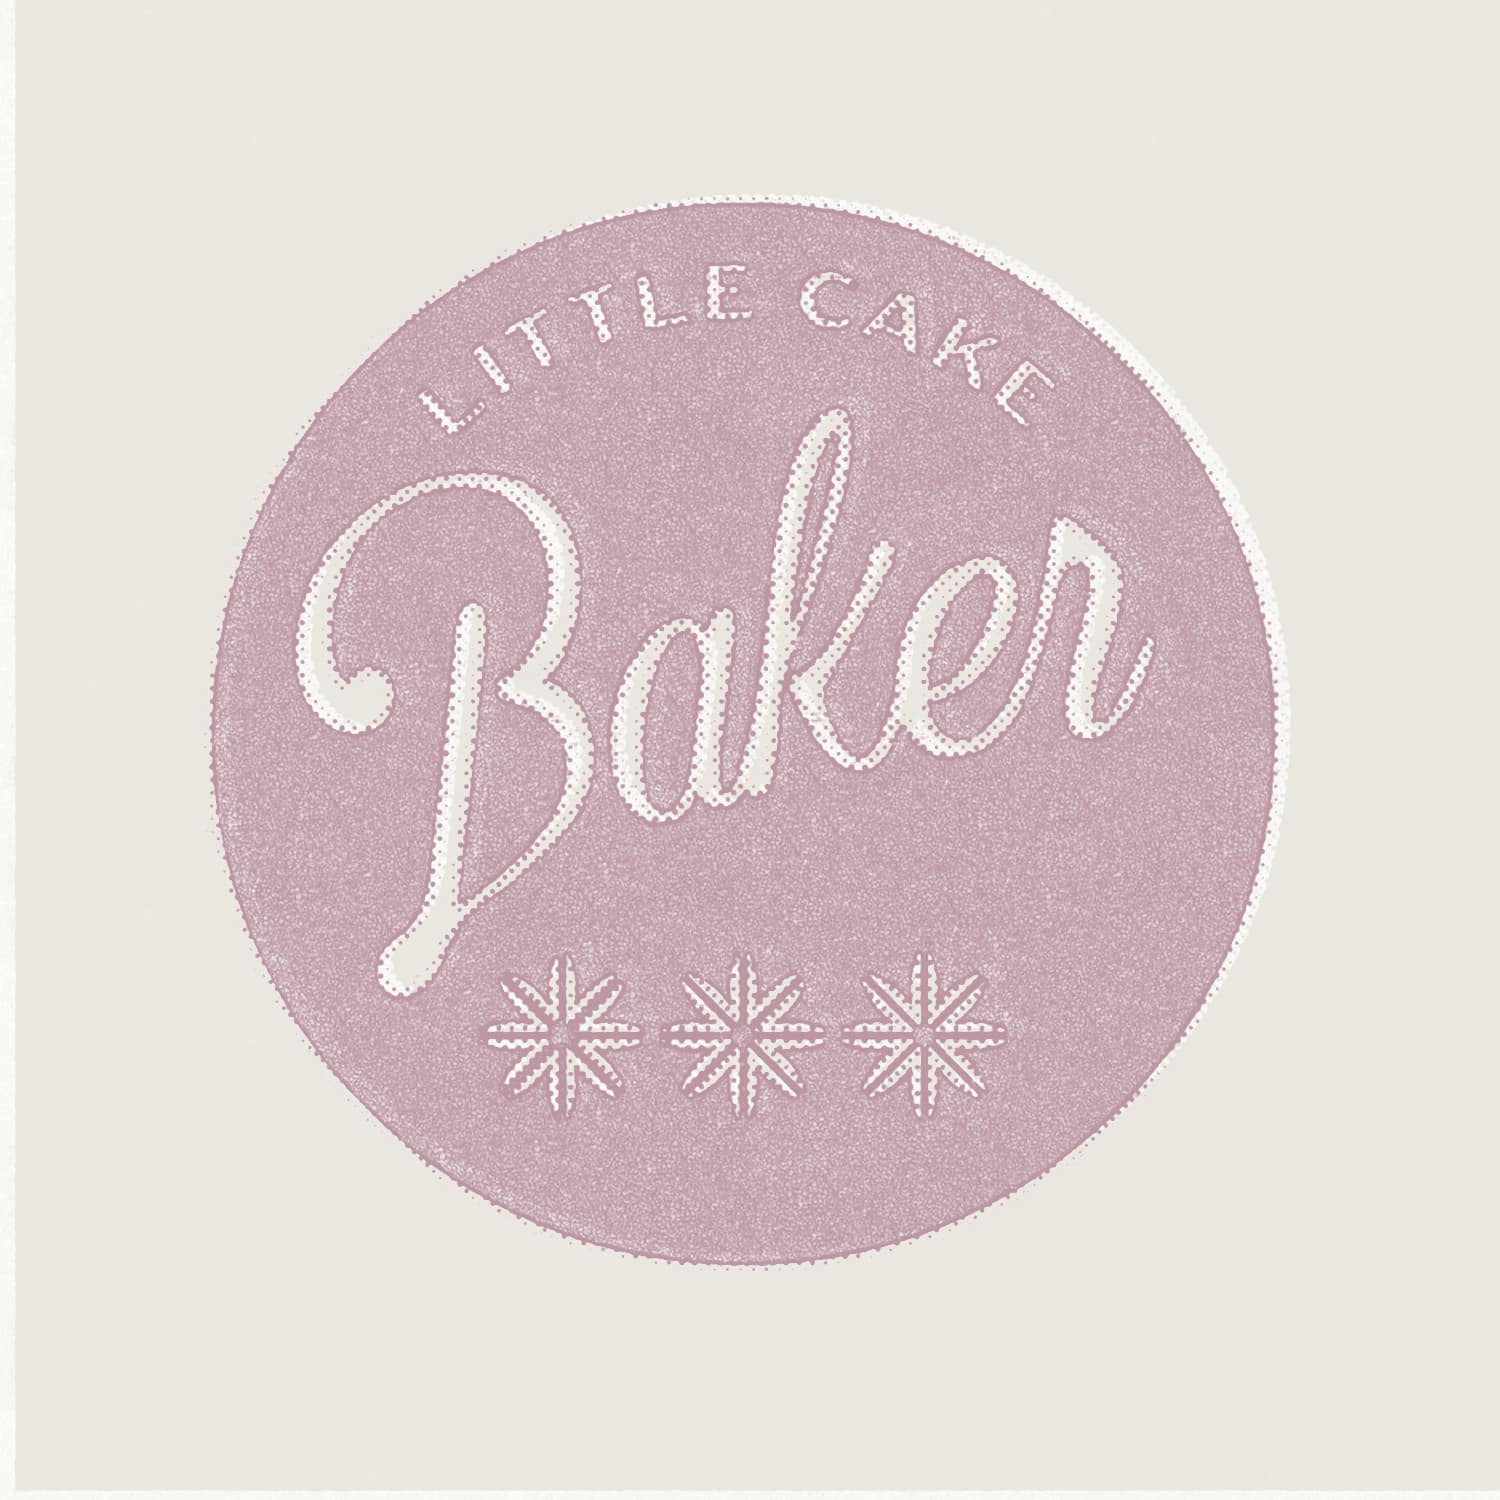 Logo Designs for Little Cake Baker Brittany Lomardi by Stellen Design Branding Agency in Los Angeles California